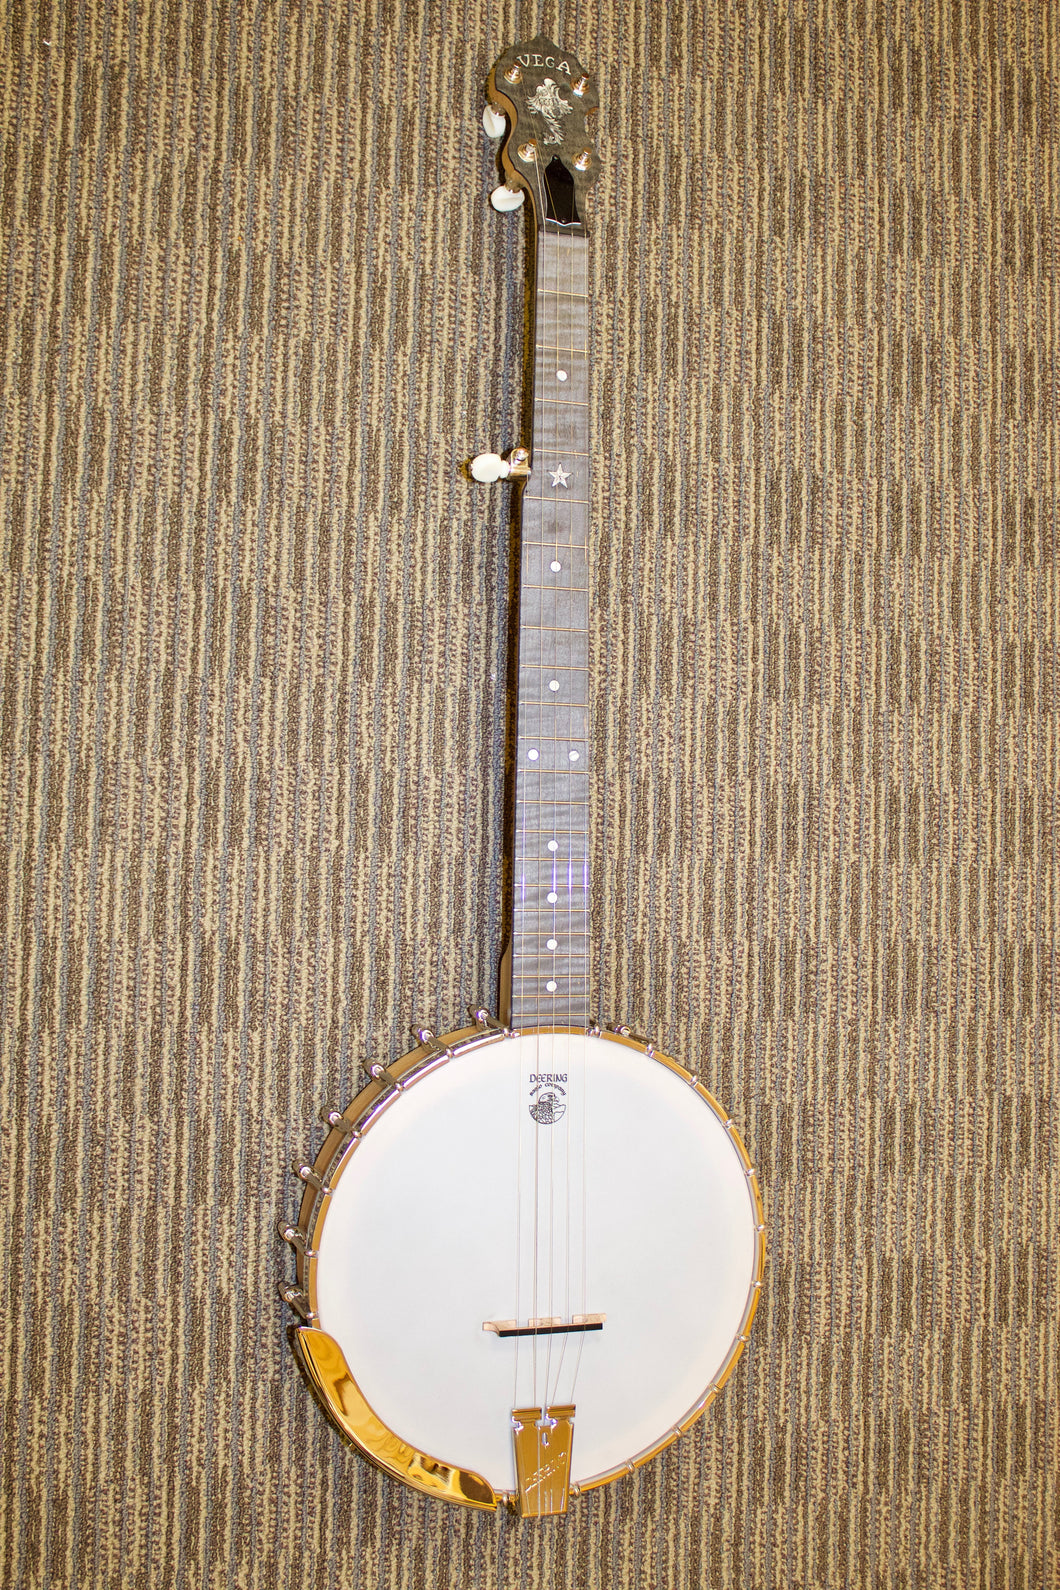 Vega White Oak banjo w/ 11